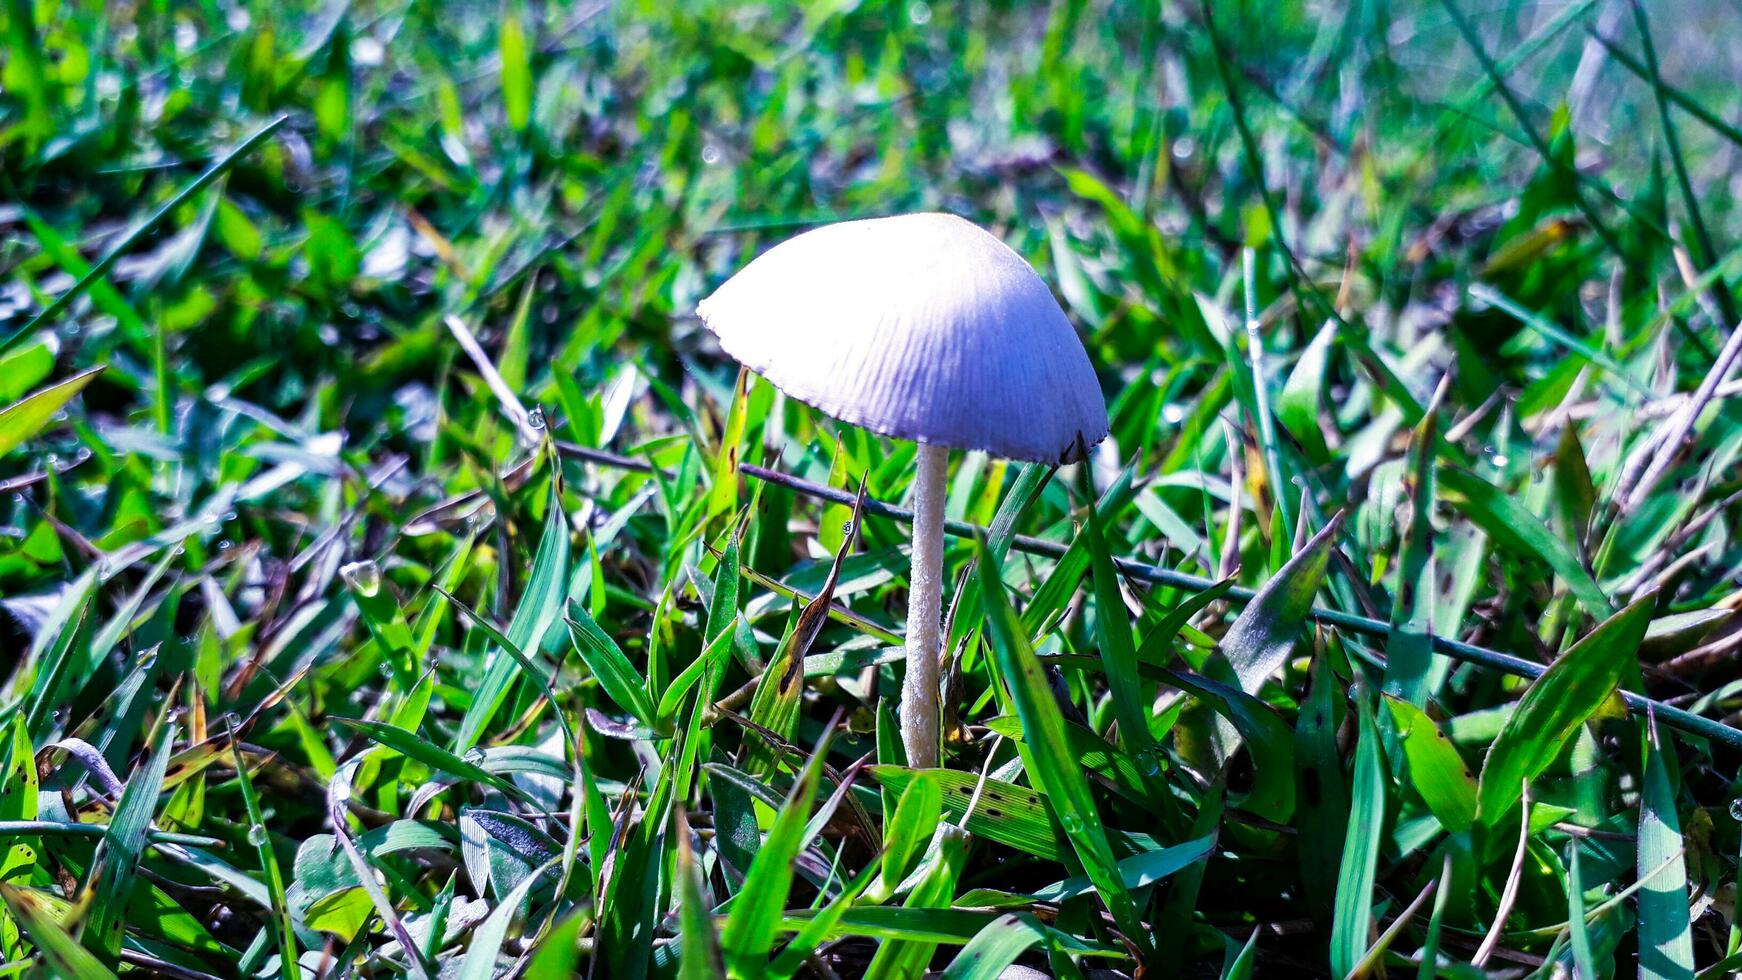 magnifique parasol champignon sur vert herbe photo